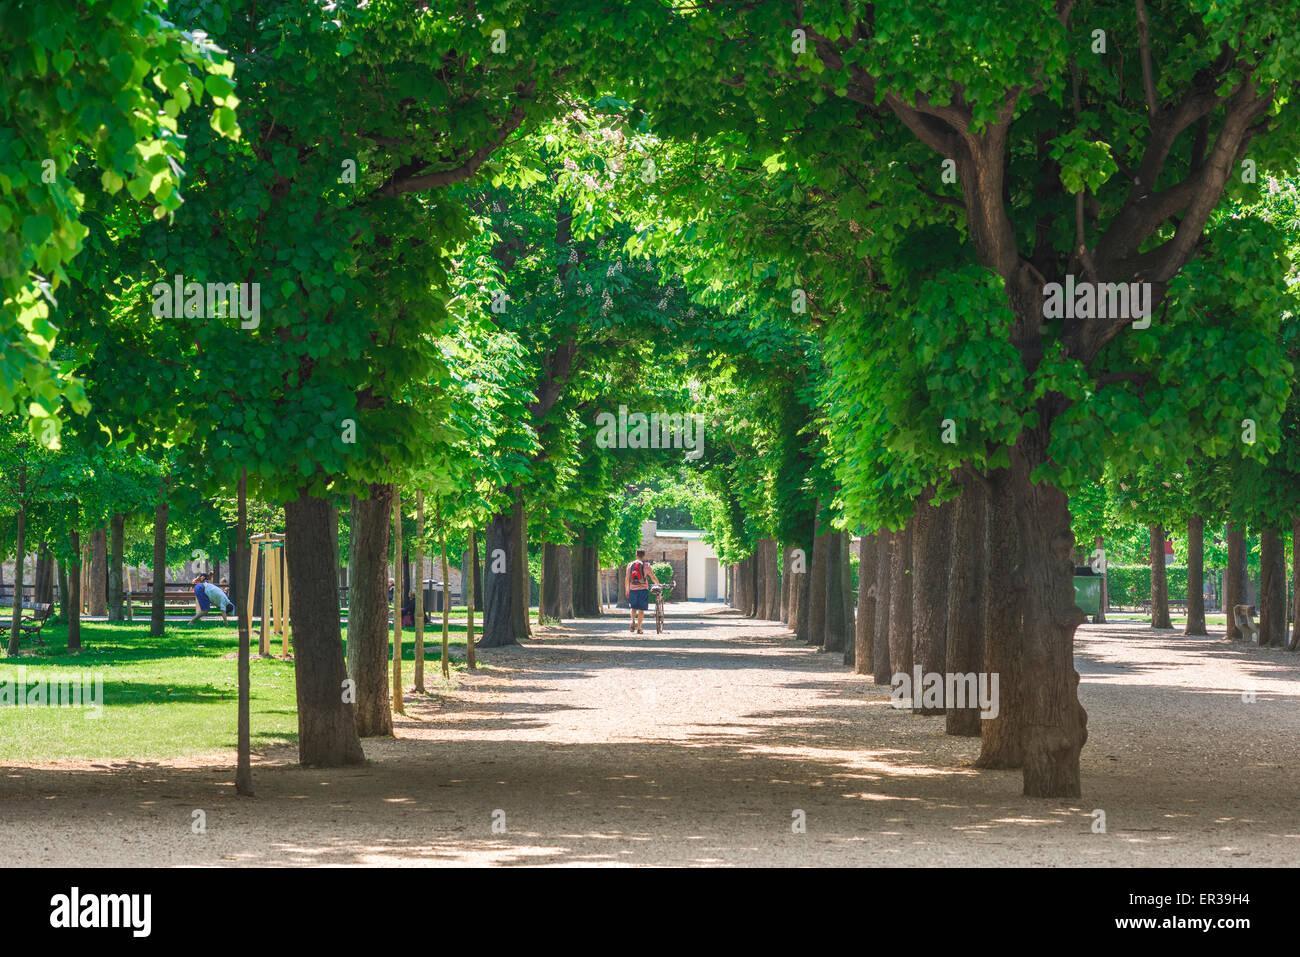 Parque Augarten de Viena, vista a finales de la primavera de las coloridas avenidas arboladas del parque Augarten en el distrito Leopoldstadt de Viena. Foto de stock